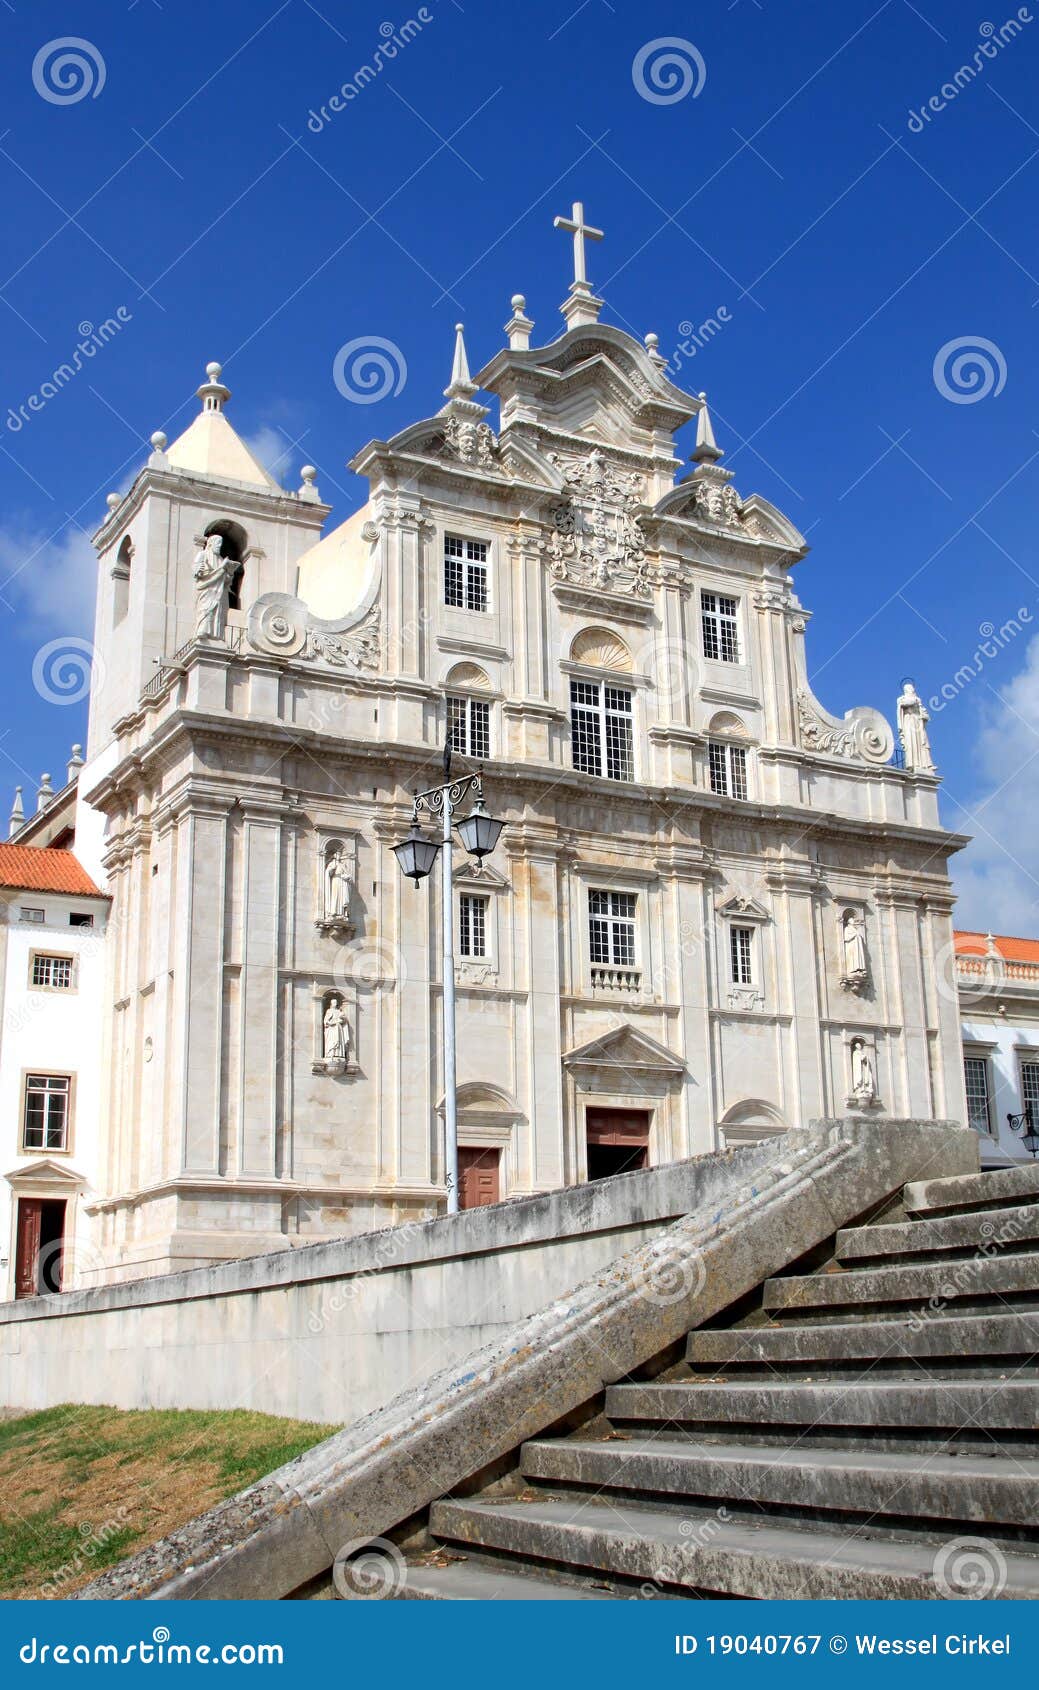 葡萄牙布拉加 — 2017年10月15日：葡萄牙布拉加圣十字教堂内部 编辑类图片 - 图片 包括有 拱道, 交叉: 187555730